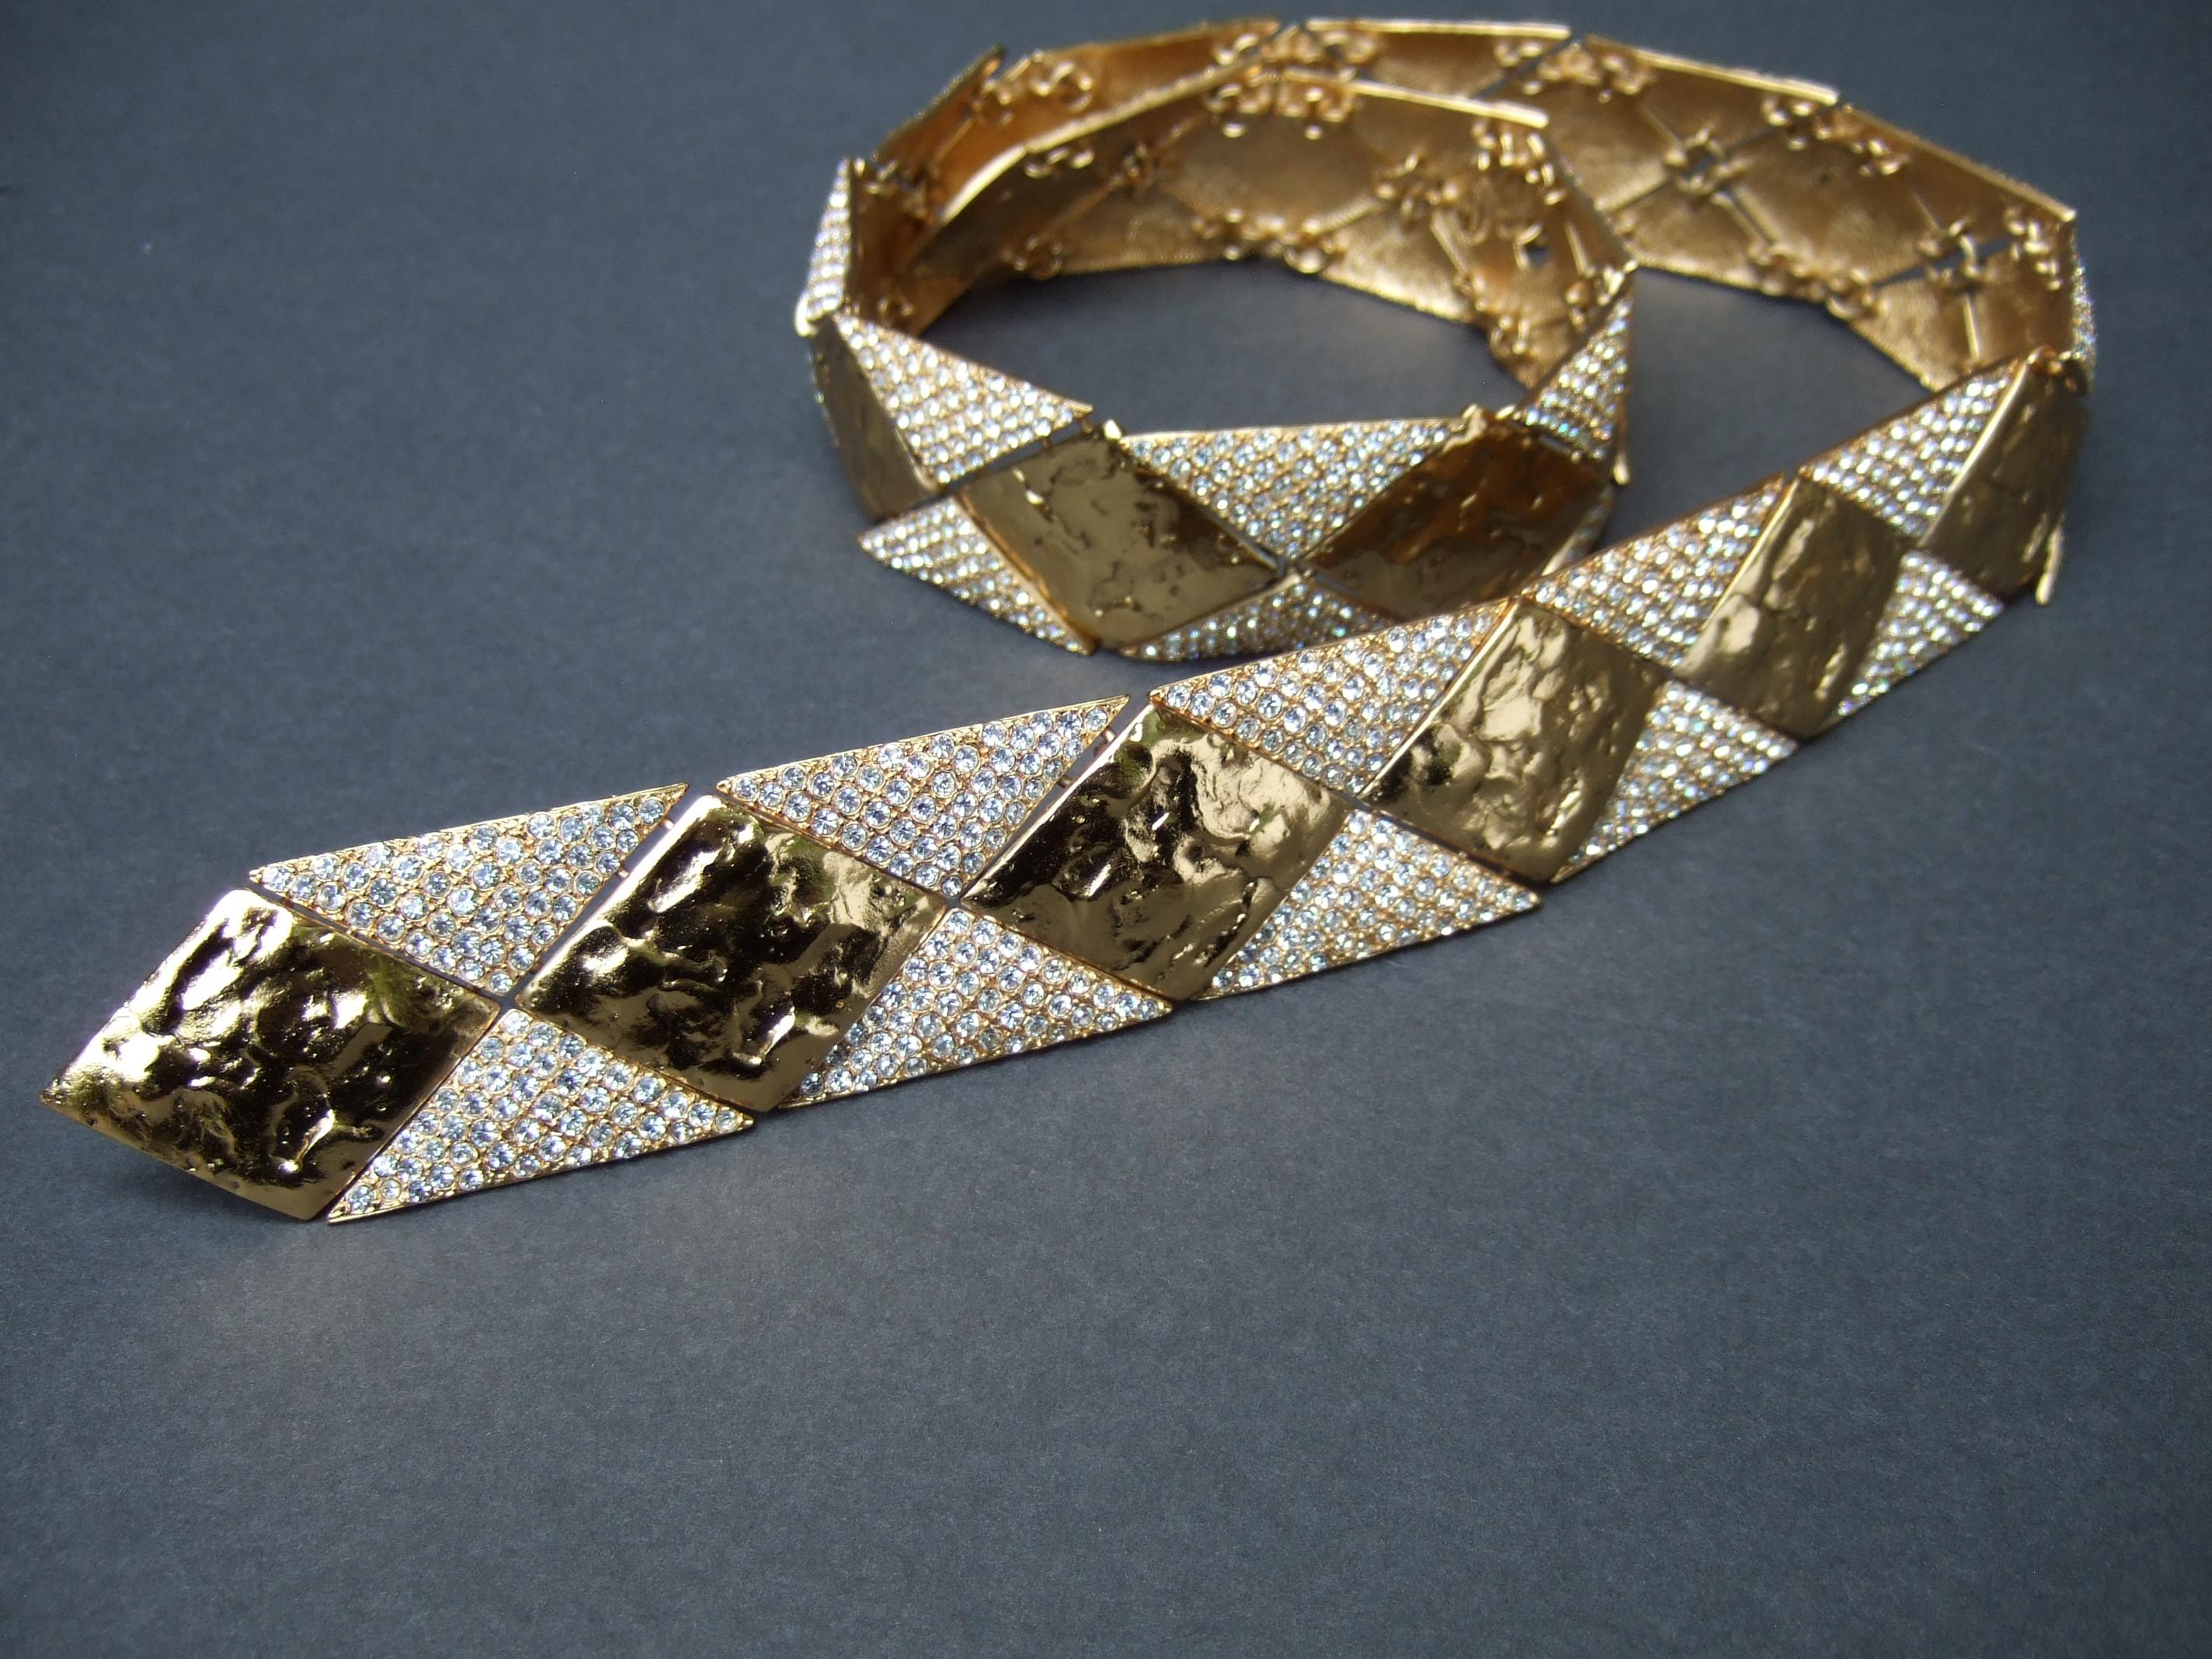 YVES SAINT LAURENT Rive Gauche Paris Opulente ceinture couture articulée en métal doré et cristal c 1970s
L'exquise ceinture couture Saint Laurent est conçue avec de lourds panneaux géométriques articulés en métal doré. 
qui ont une finition